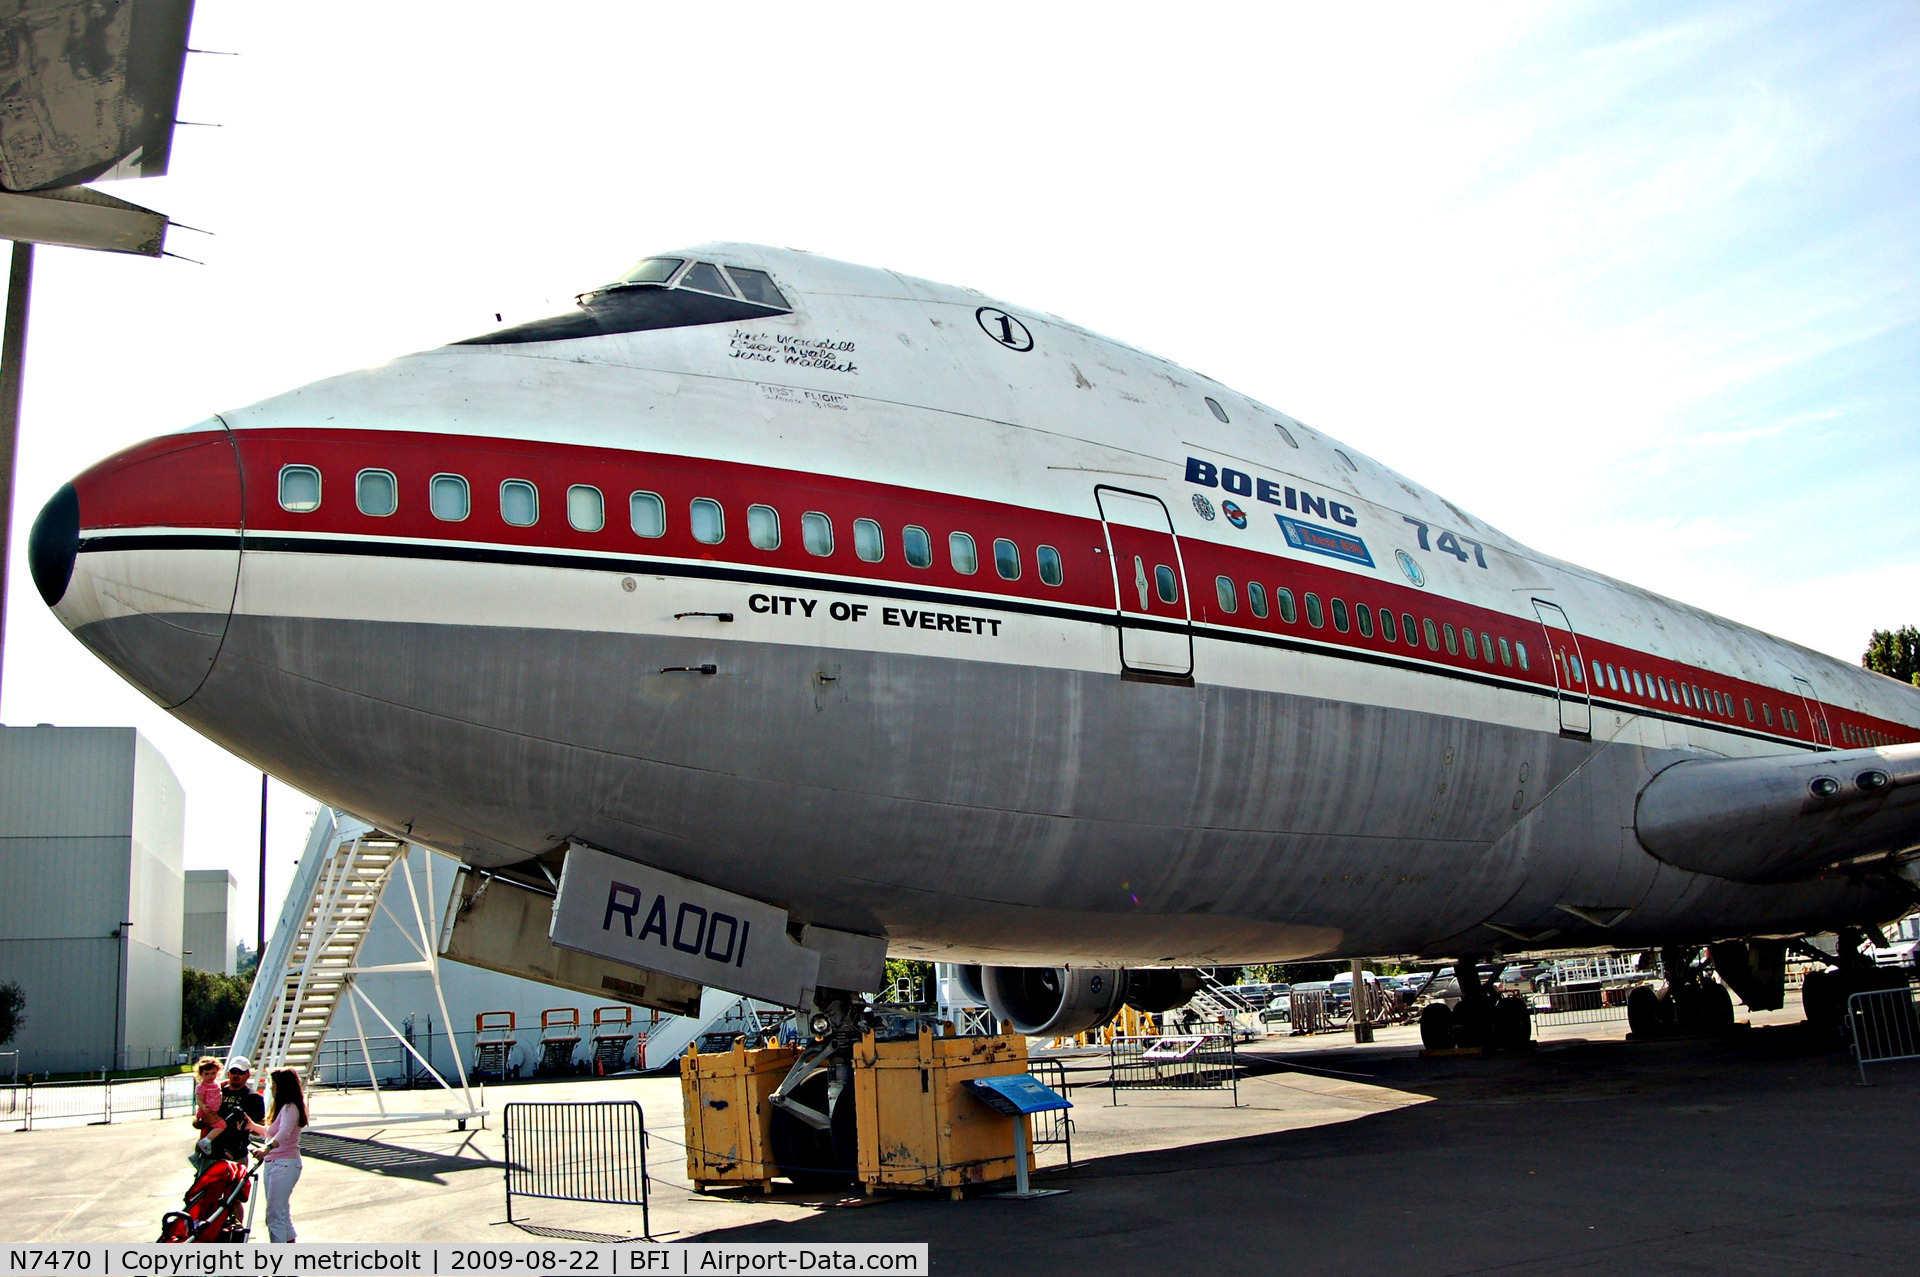 N7470, 1969 Boeing 747-121 C/N 20235, at the Museum of Flight